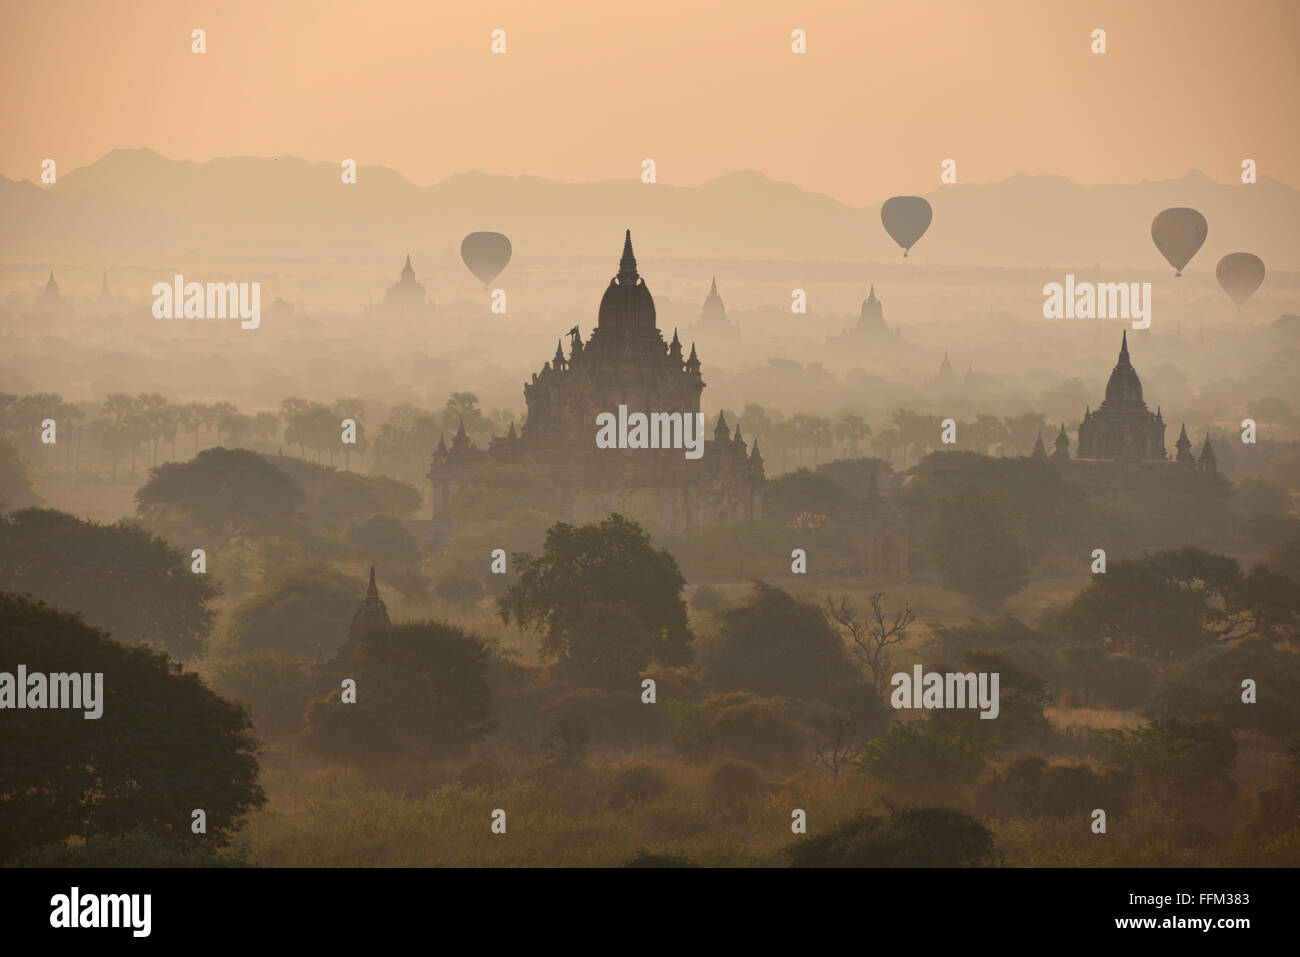 Ballons fliegen über die Tempel von Bagan, Myanmar bei Sonnenaufgang Stockfoto